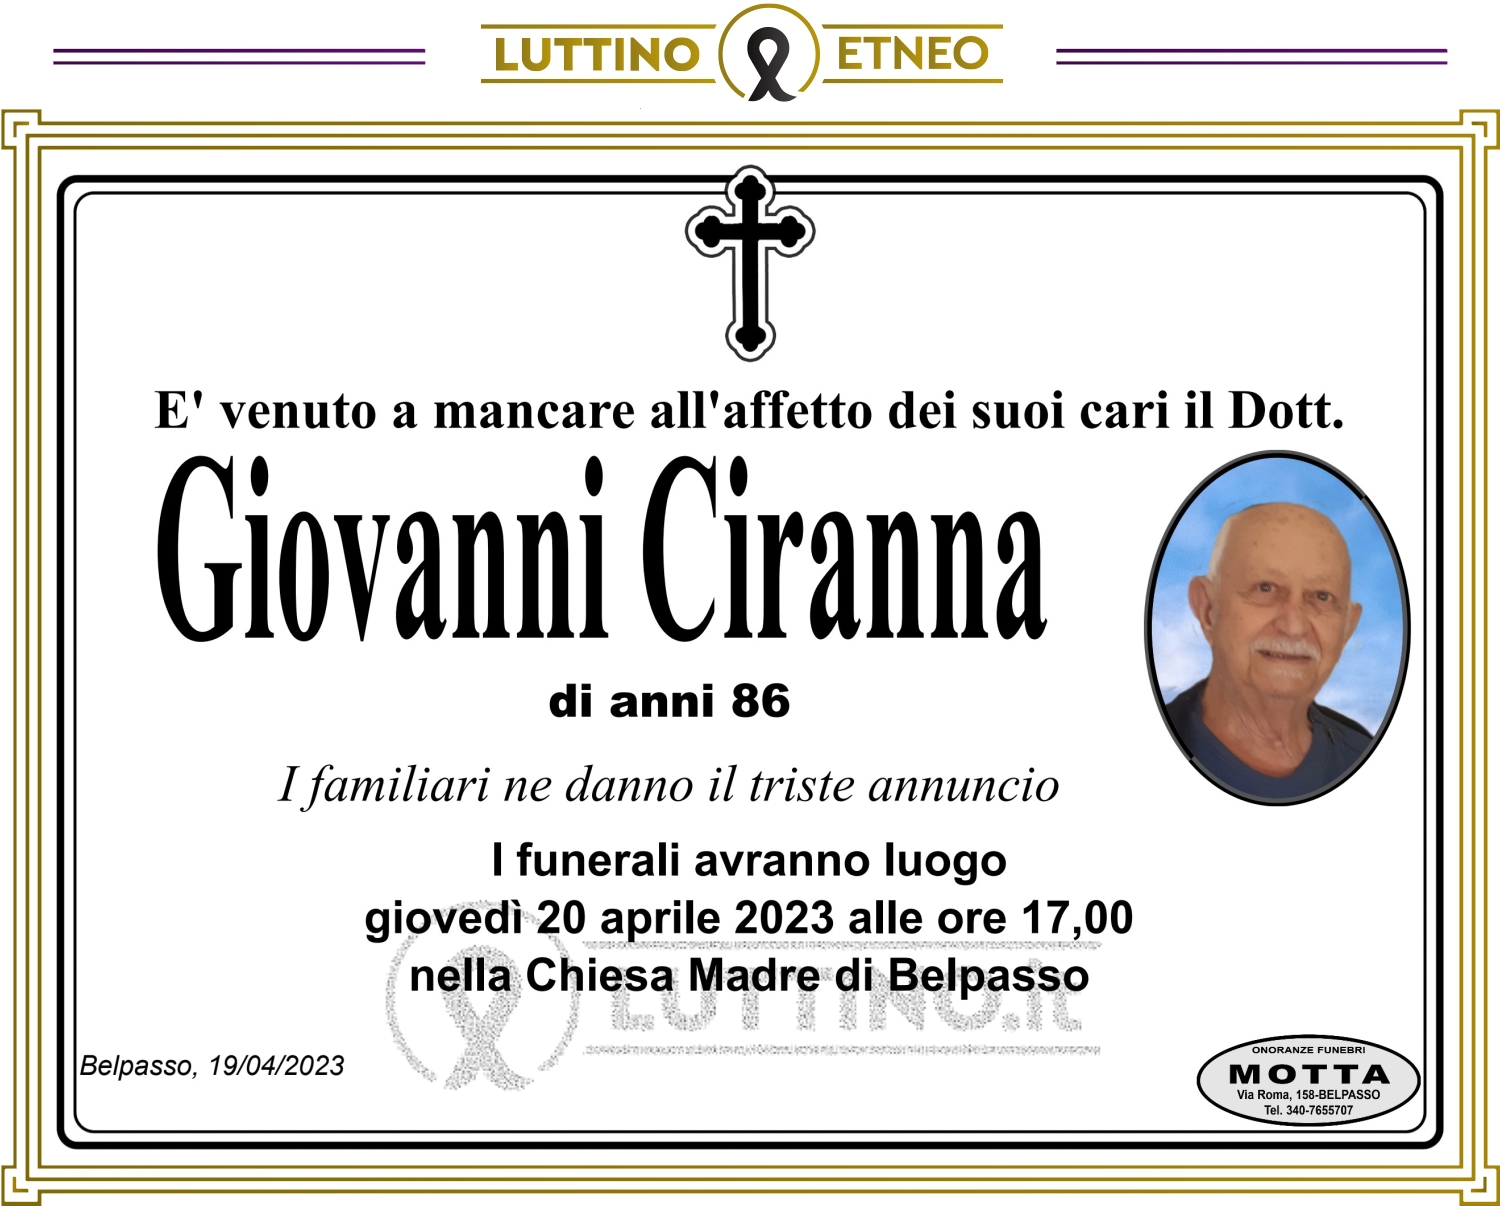 Giovanni Ciranna